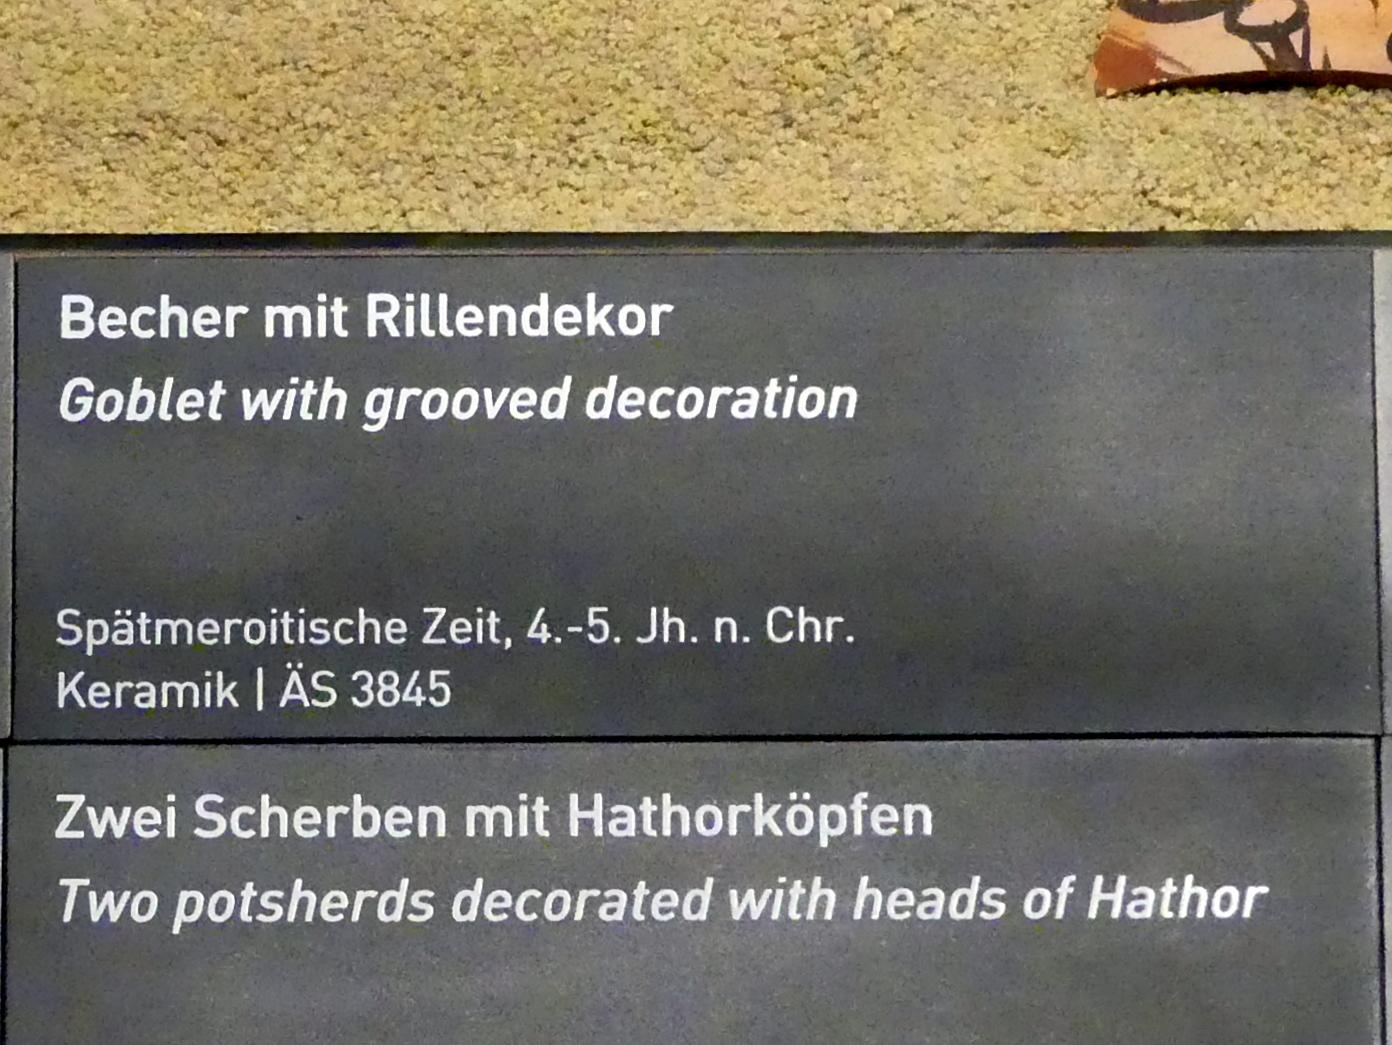 Becher mit Rillendekor, Meroitische Zeit, 200 v. Chr. - 500 n. Chr., 300 - 500, Bild 2/2